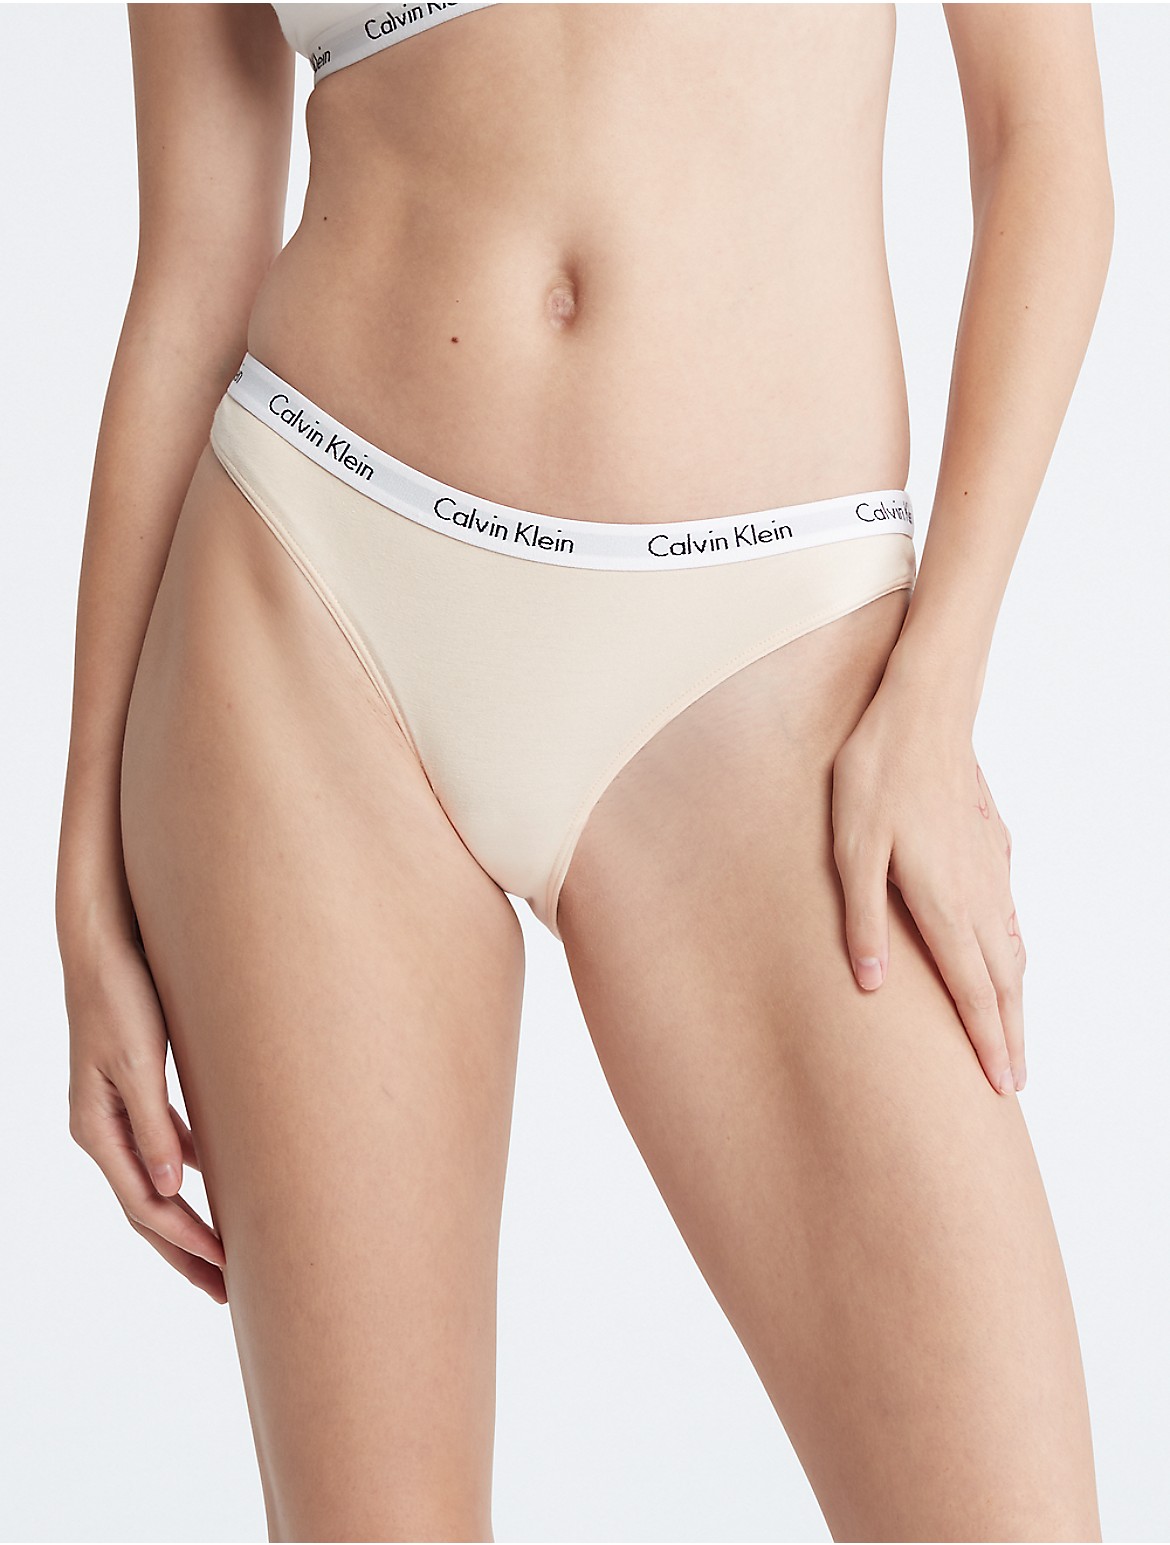 Calvin Klein Women's Carousel Logo Cotton Bikini Bottom - White - S